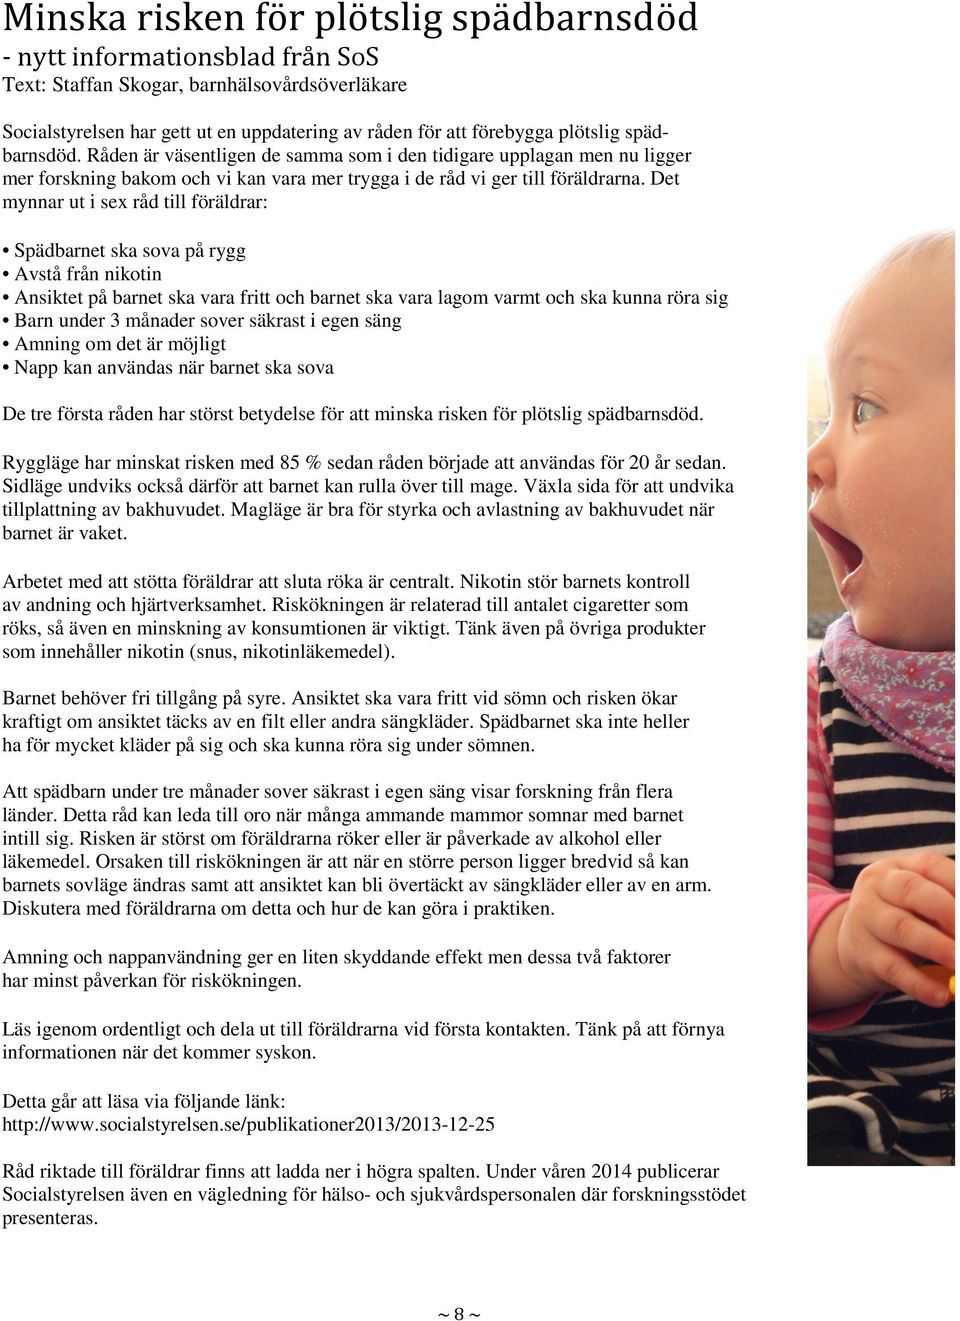 Det mynnar ut i sex råd till föräldrar: Spädbarnet ska sova på rygg Avstå från nikotin Ansiktet på barnet ska vara fritt och barnet ska vara lagom varmt och ska kunna röra sig Barn under 3 månader